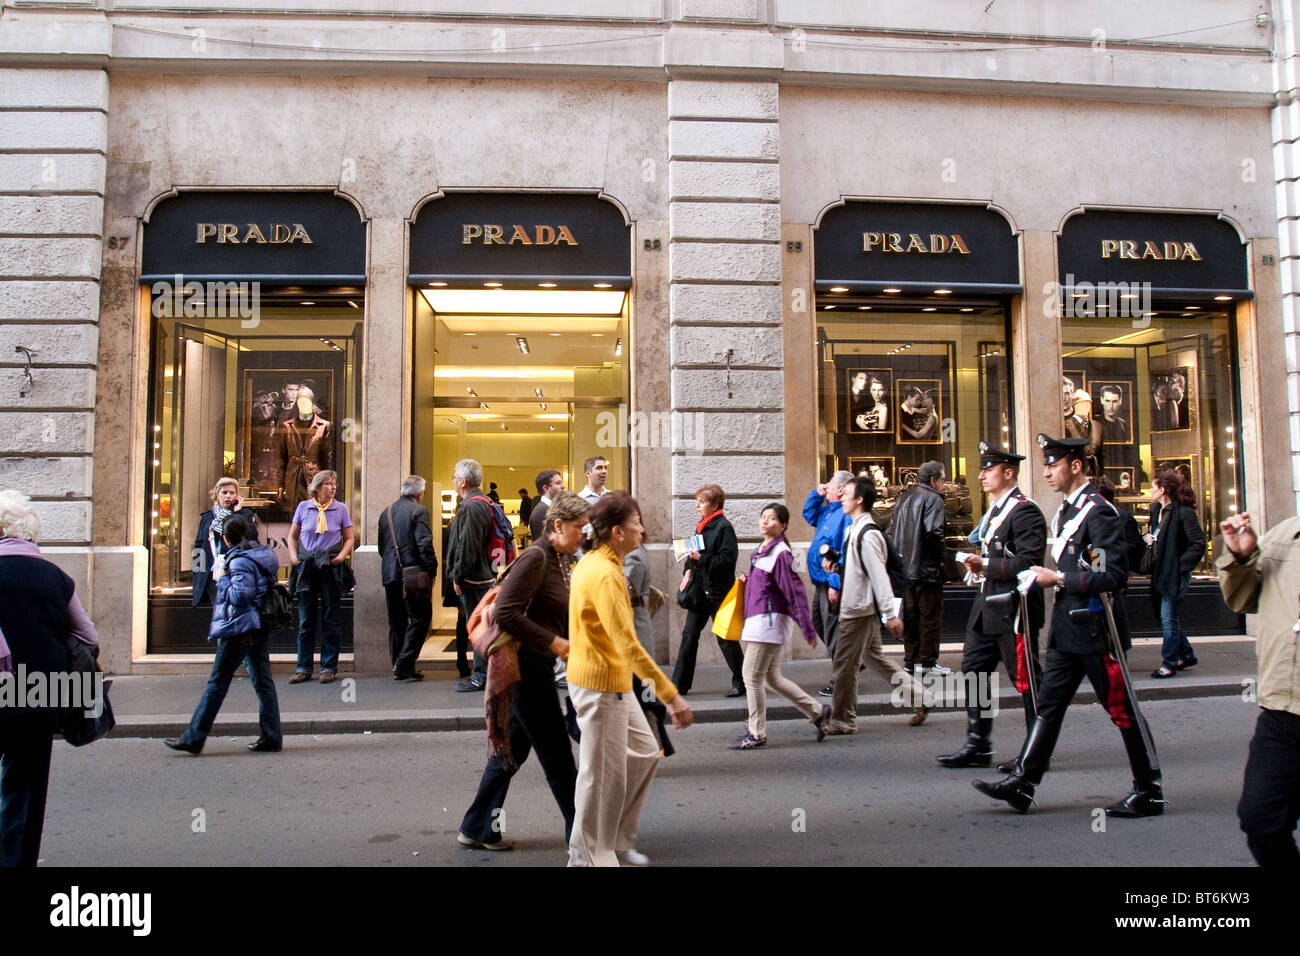 Die Via dei Condotti Prada Mode Schaufenster auf Hintergrund. Rom Italien  Stockfotografie - Alamy